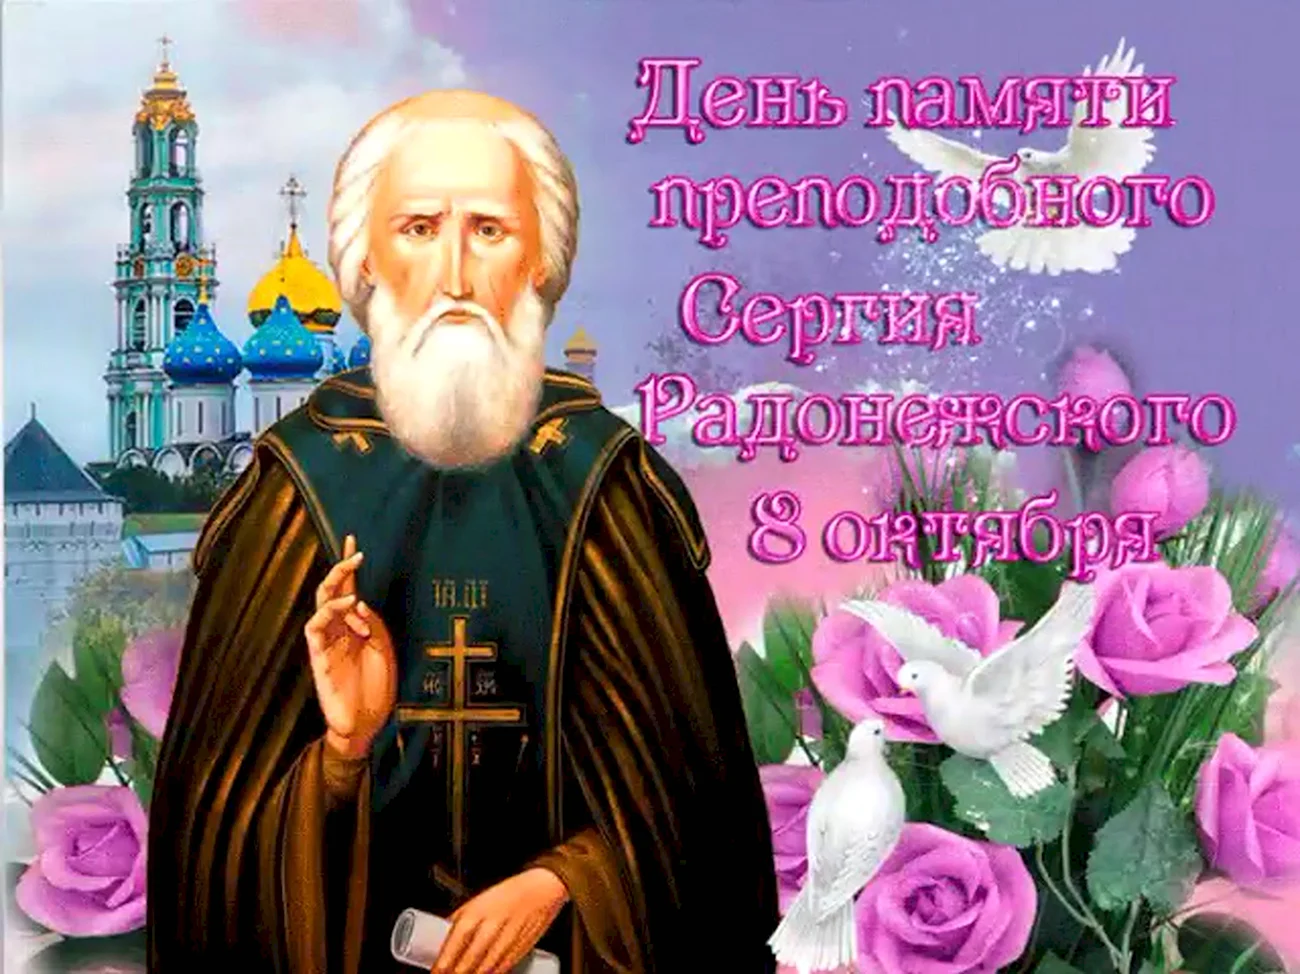 День памяти Сергия Радонежского. Поздравление